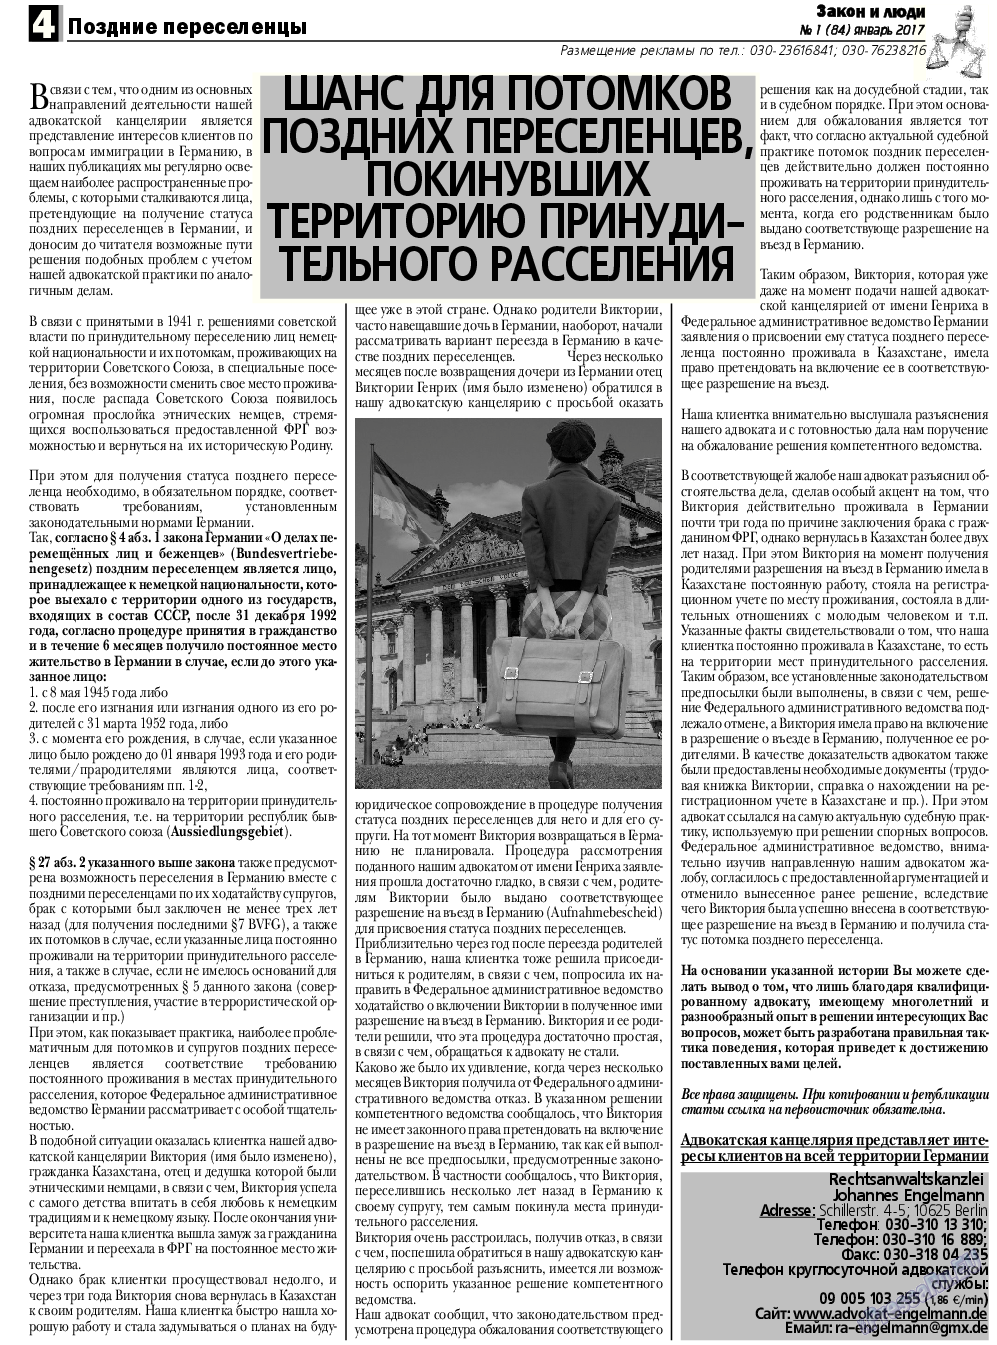 Закон и люди, газета. 2017 №1 стр.4